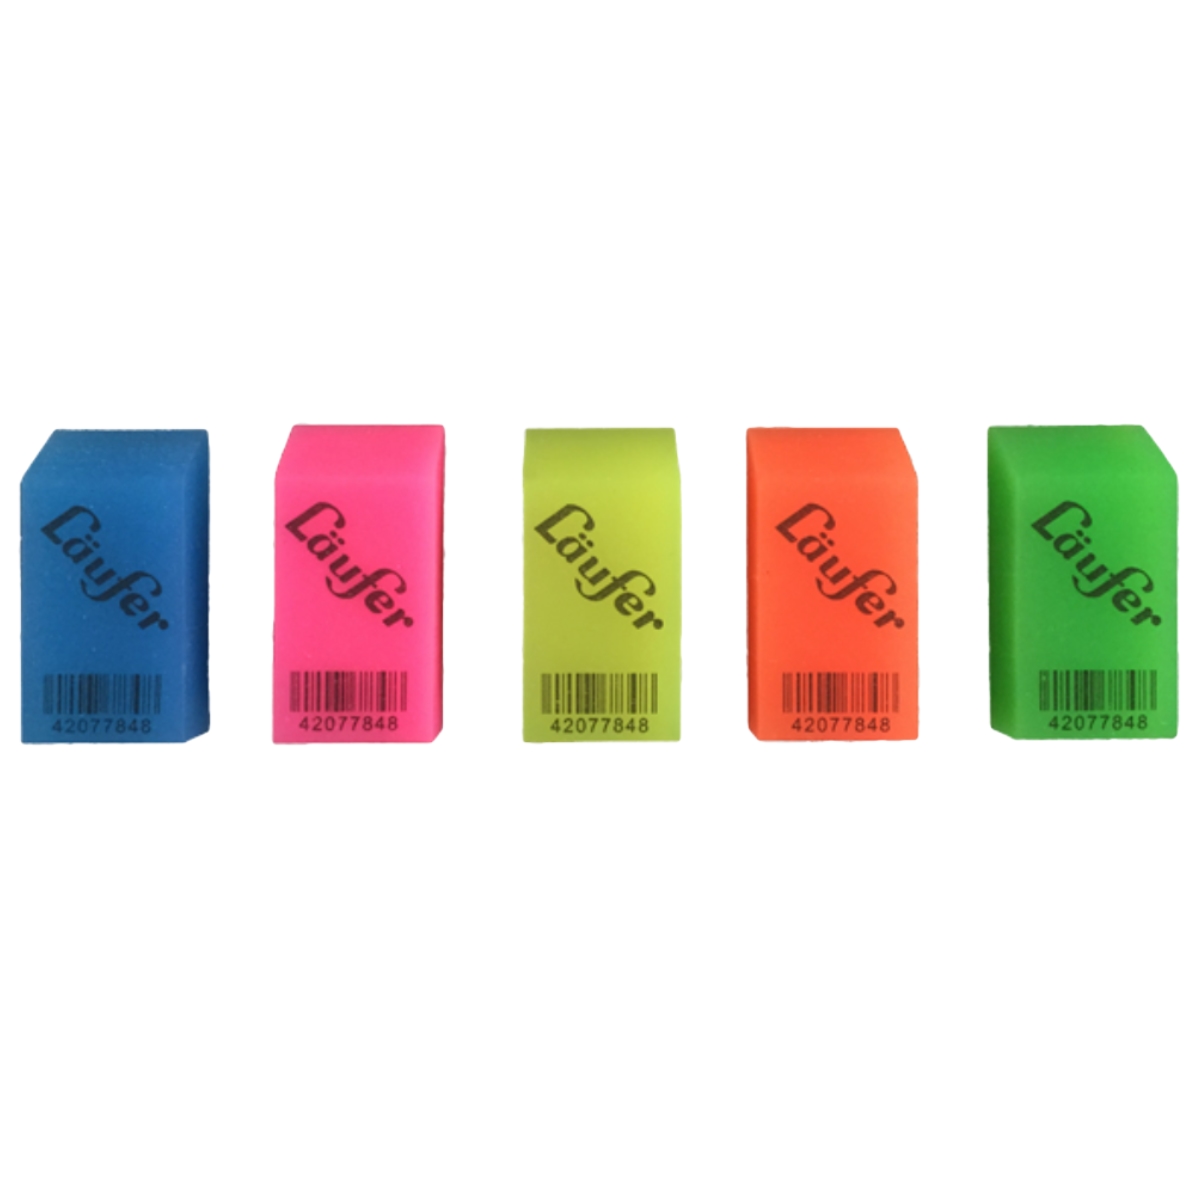 Laufer Translucent Eraser, Multi-purpose, 48x24x11mm, Assorted Colors